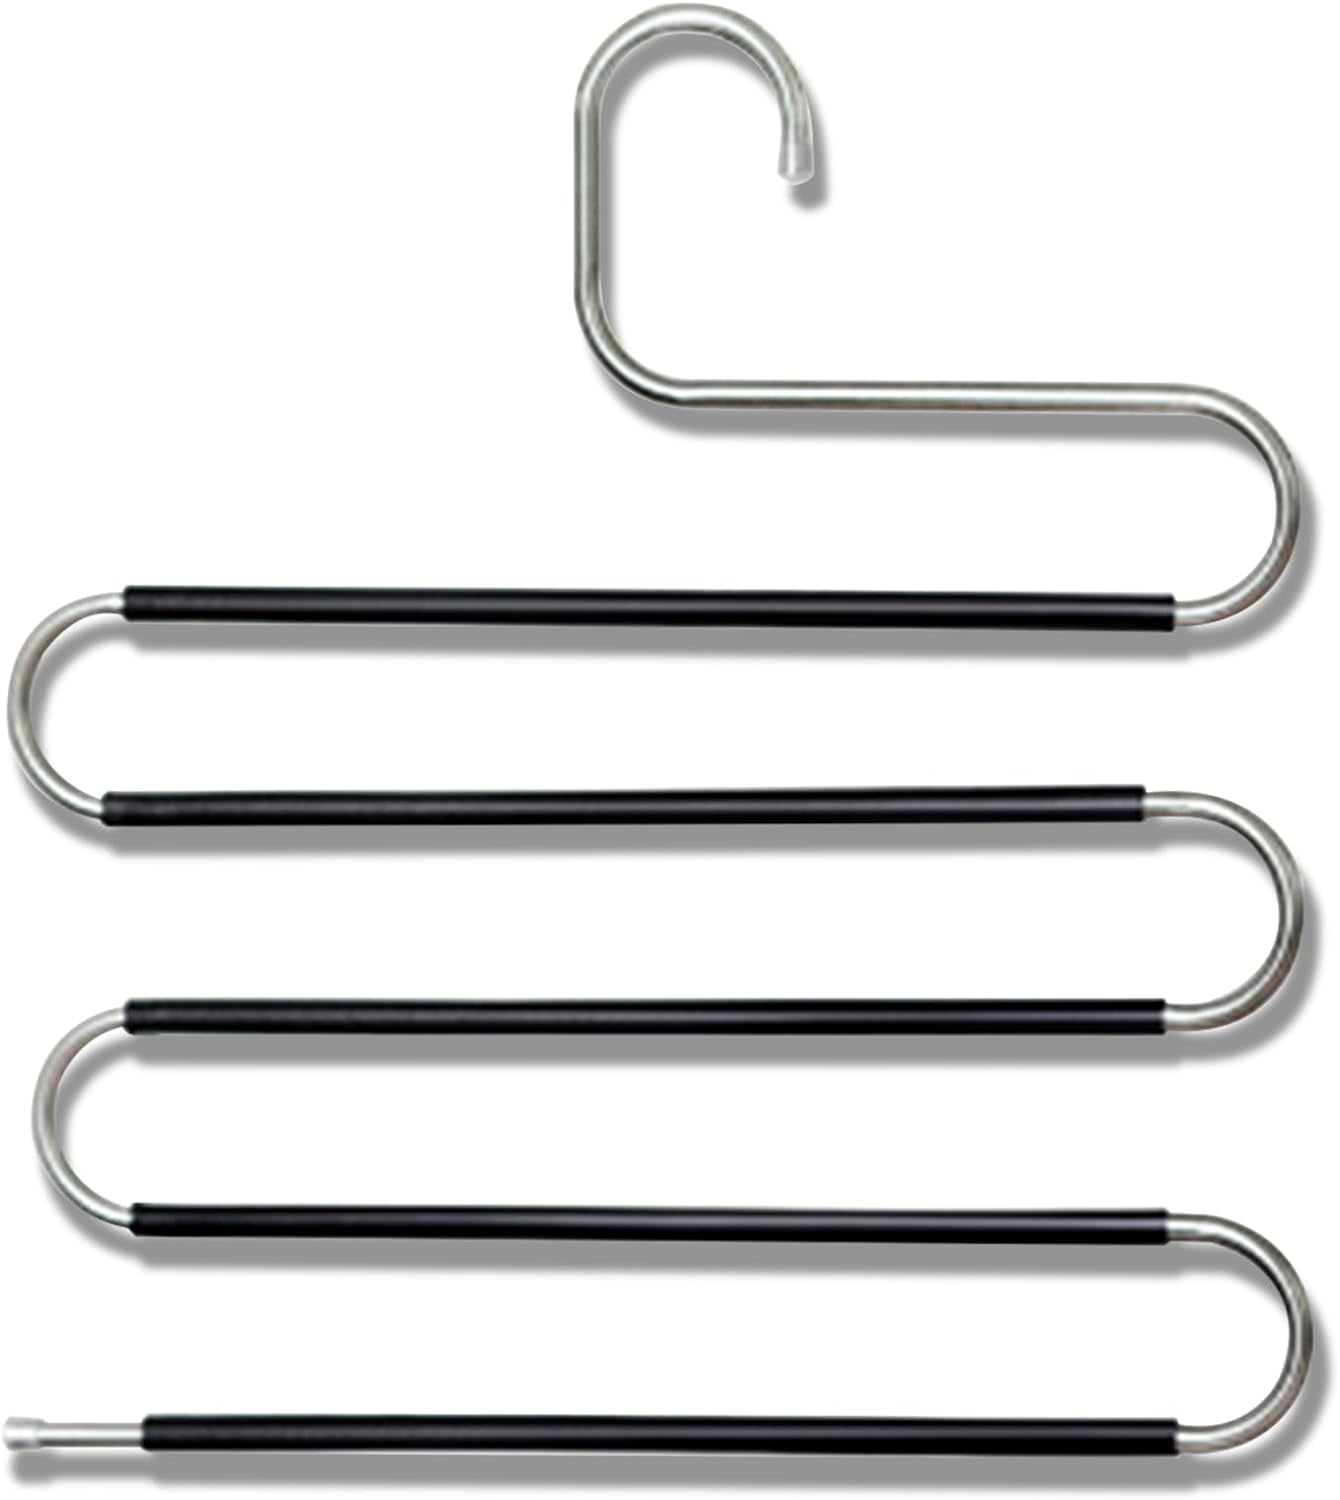 S-type Stainless Steel Anti-Slip Hanger